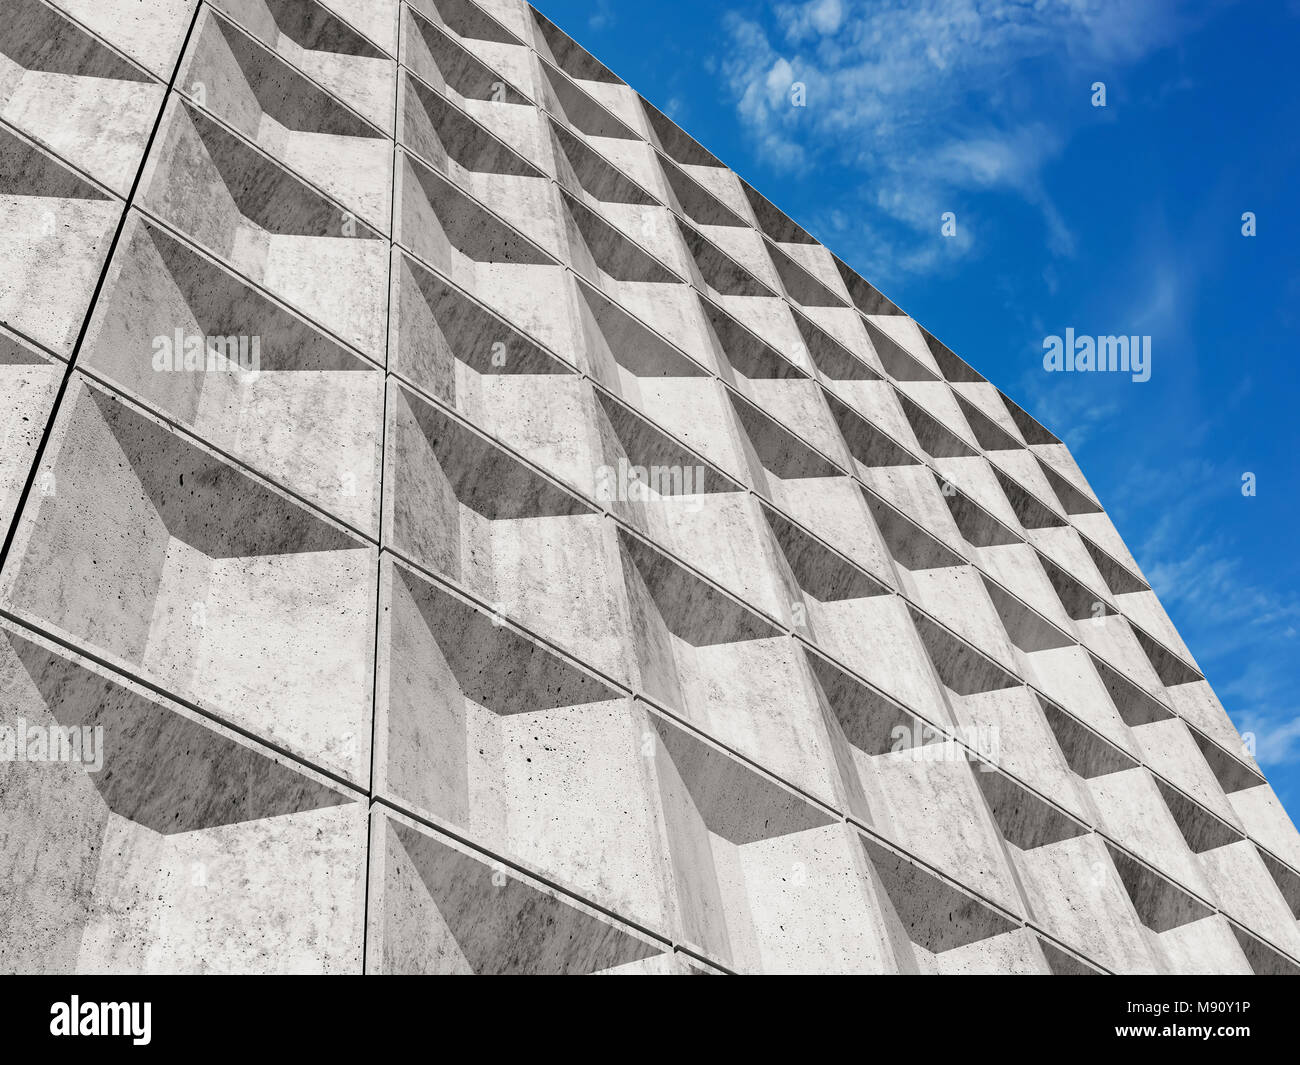 Weißer Beton Wand mit dekorativen relief Kacheln Muster unter blauem Himmel. Abstrakte Minimalismus Architektur Hintergrund, 3D-Rendering illustration Stockfoto